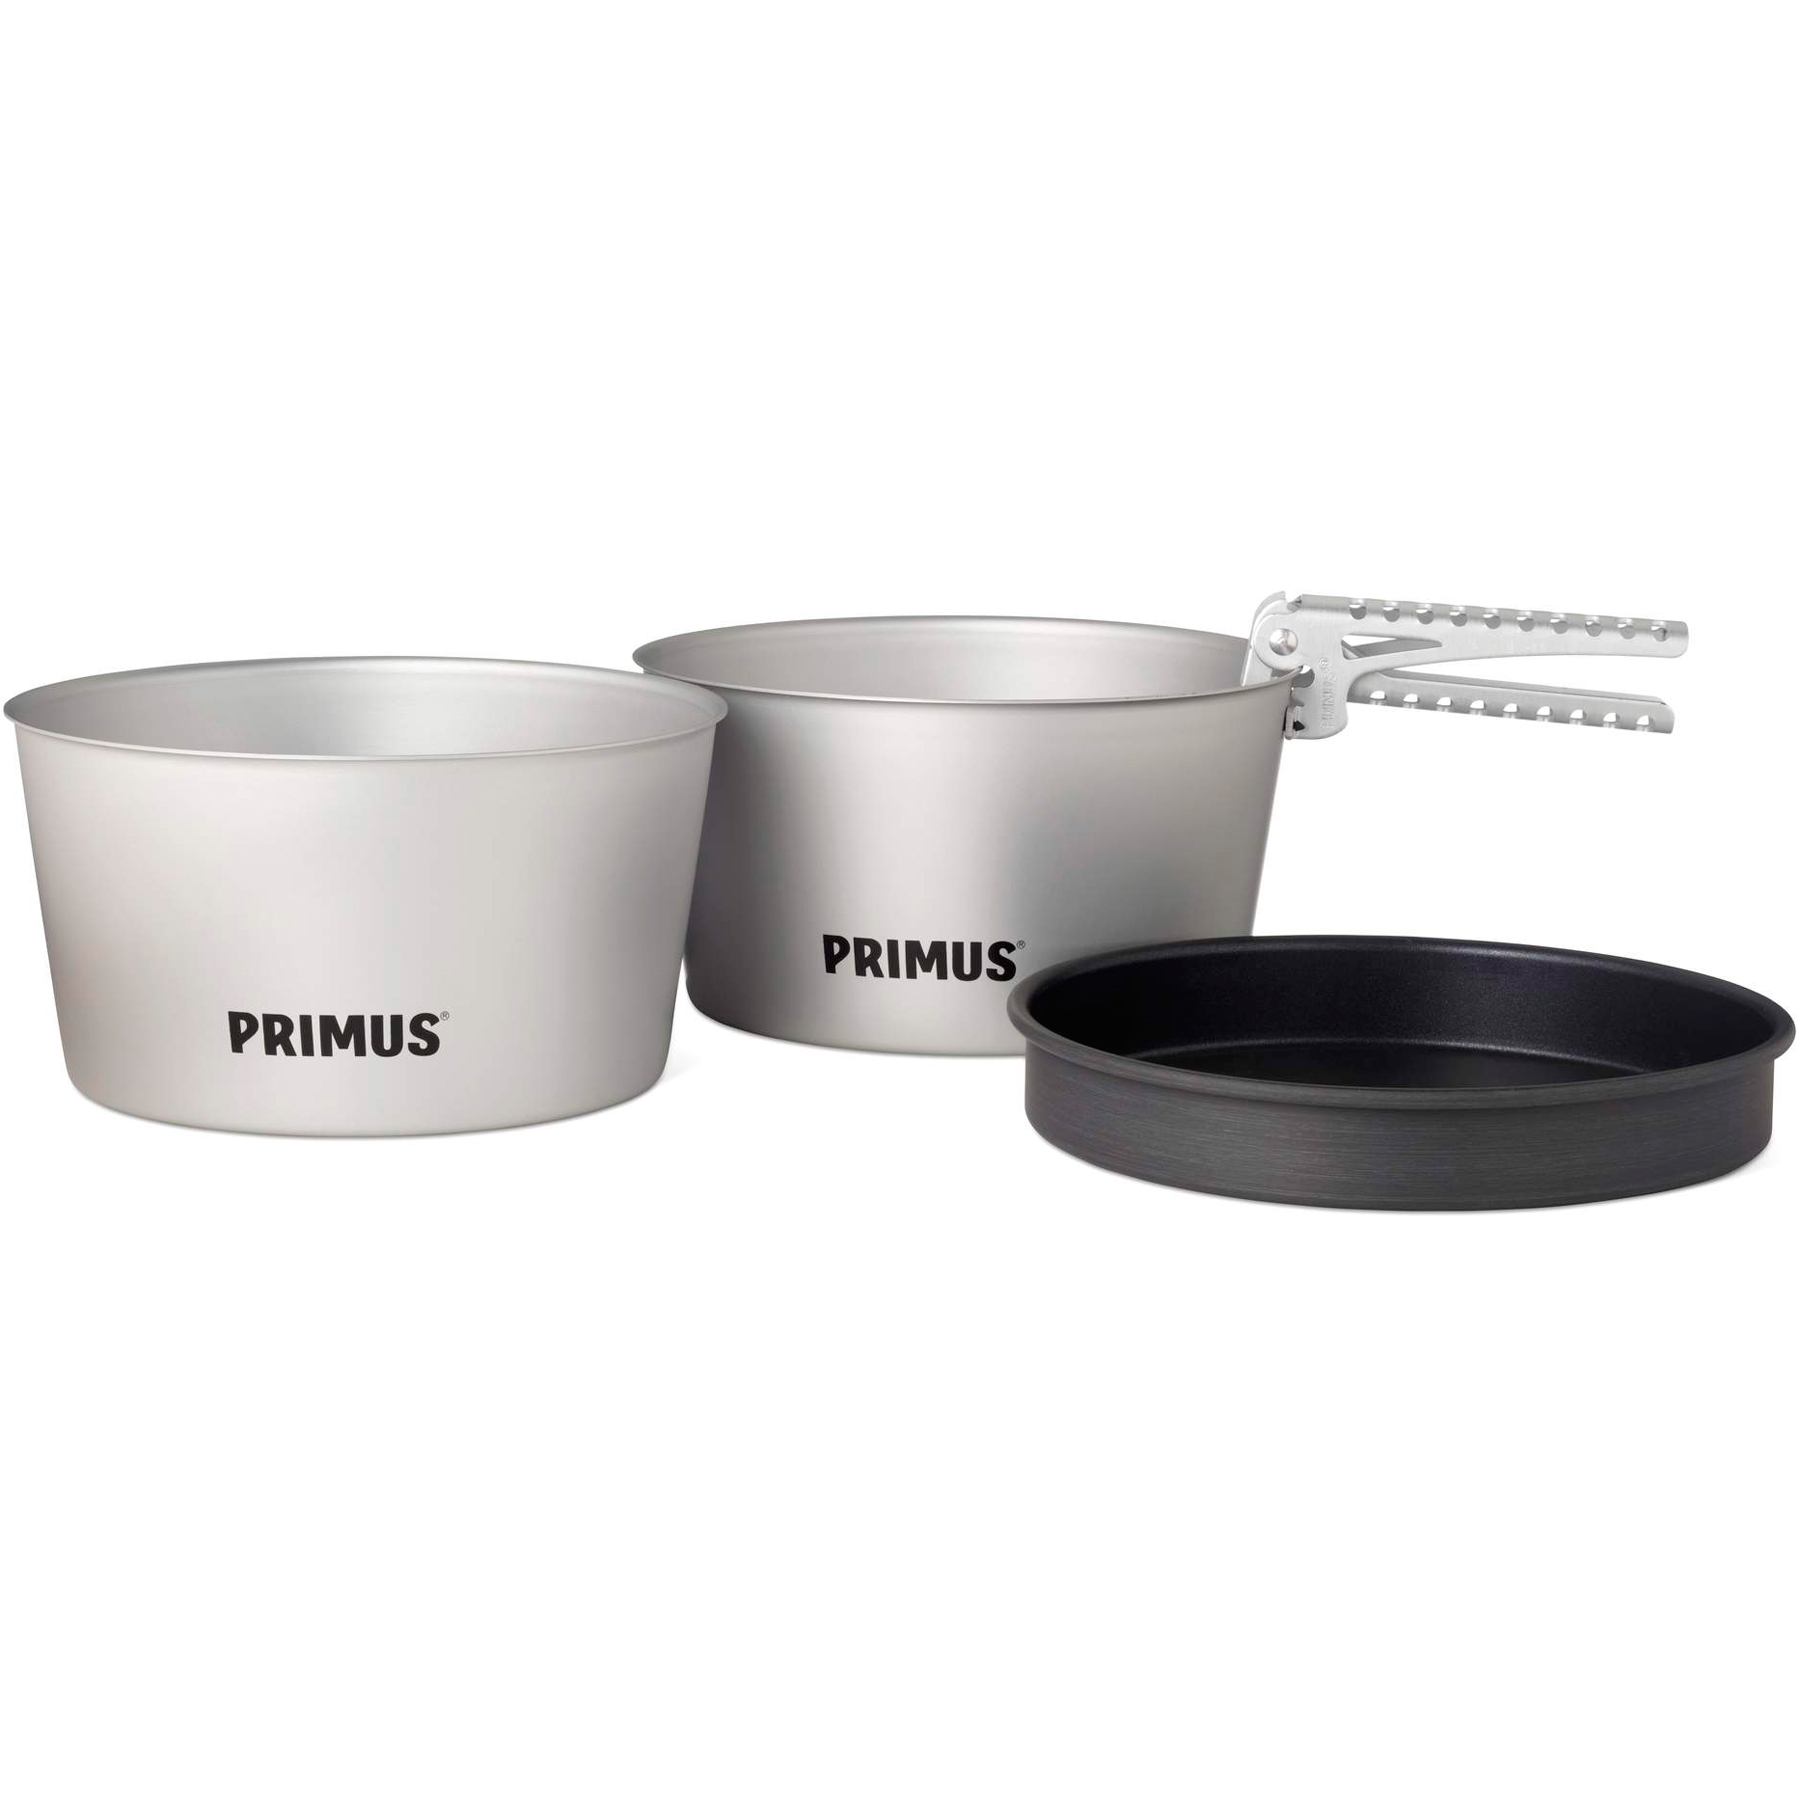 Produktbild von Primus Essential Pot Set 2x 2.3 L Topfset